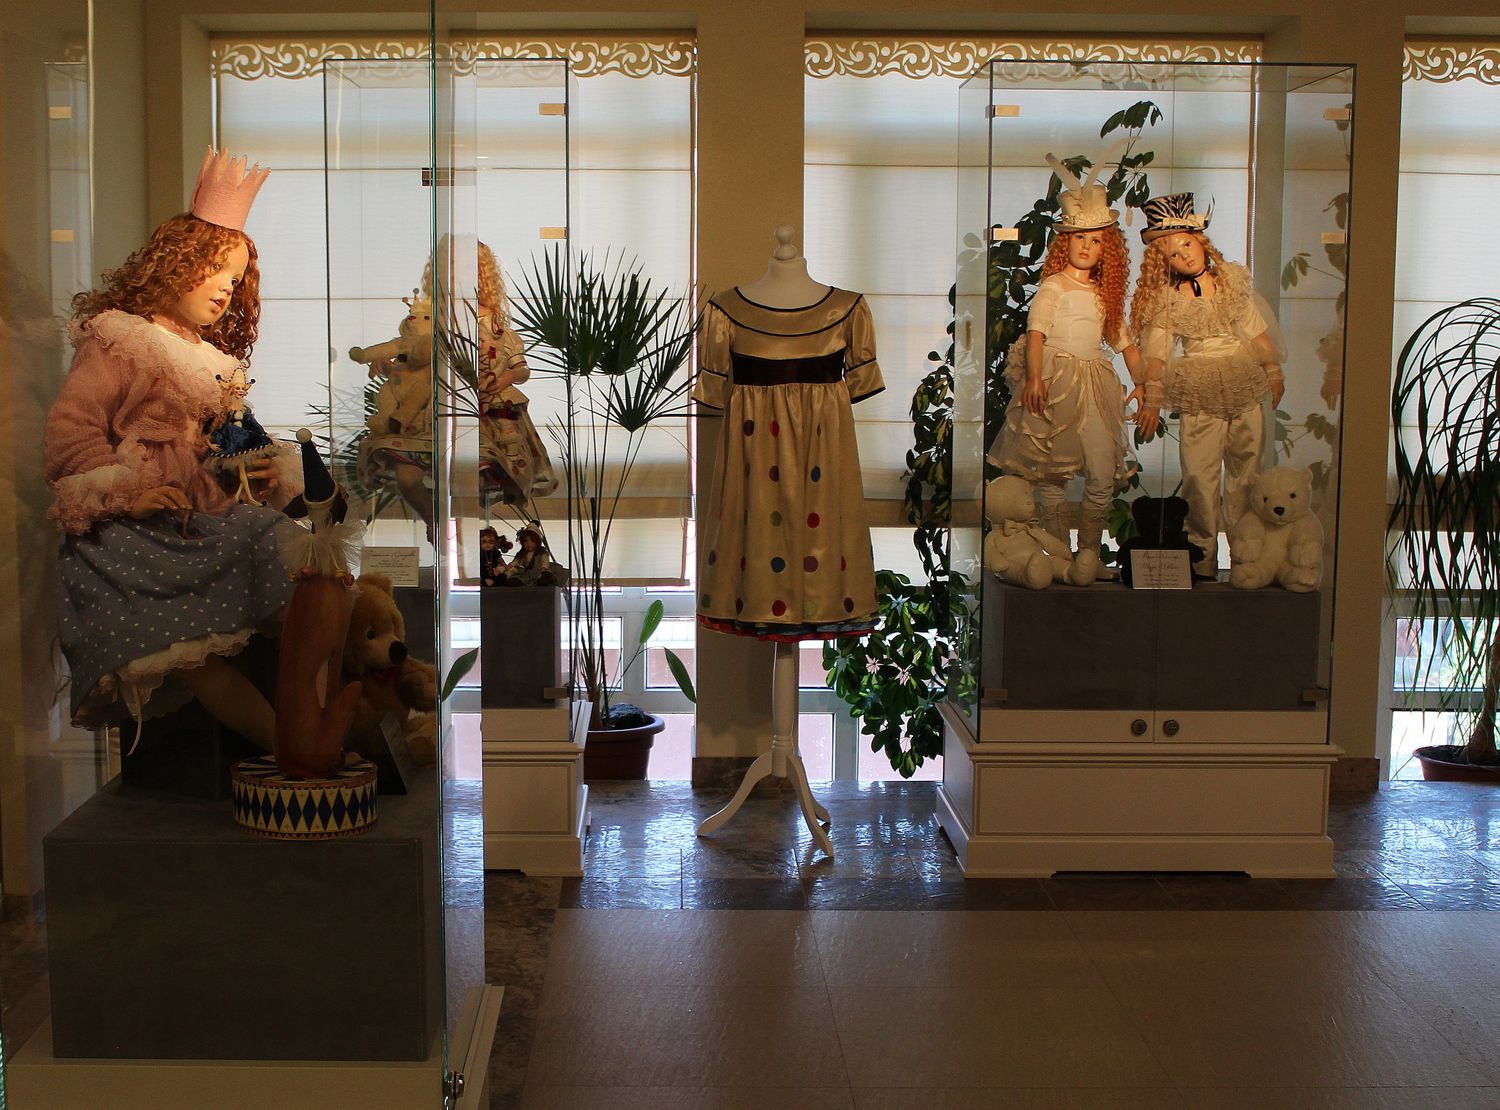 Царство кукол: уникальная галерея открылась в Нижнем Новгороде (ФОТО) - фото 2